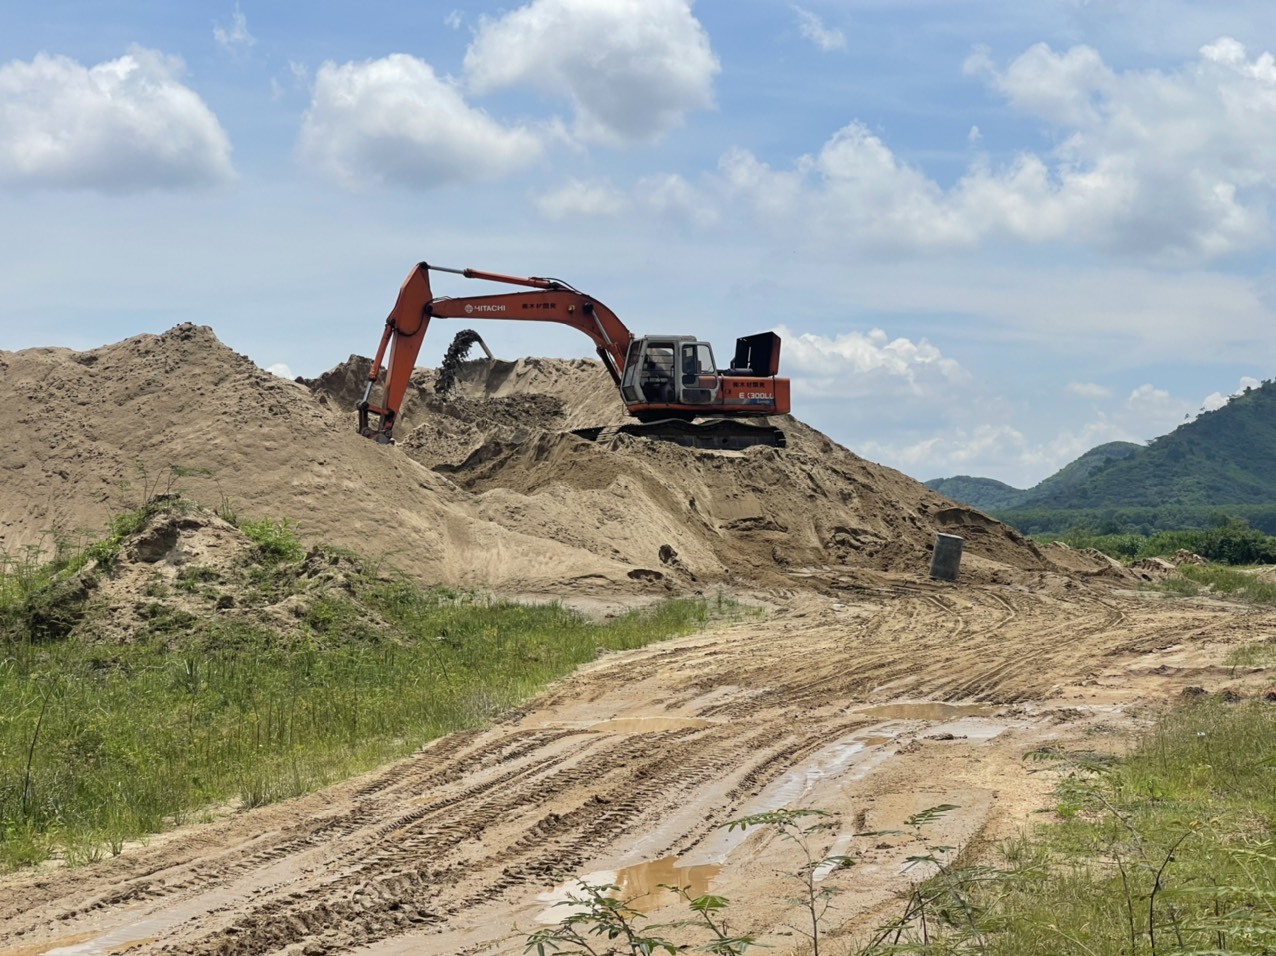 Qua kiểm tra, các ngành chức năng ở tỉnh Đắk Nông chưa phát hiện thấy tình trạng đầu cơ, găm hàng cát xây dựng để trục lợi. Ảnh: Phan Tuấn